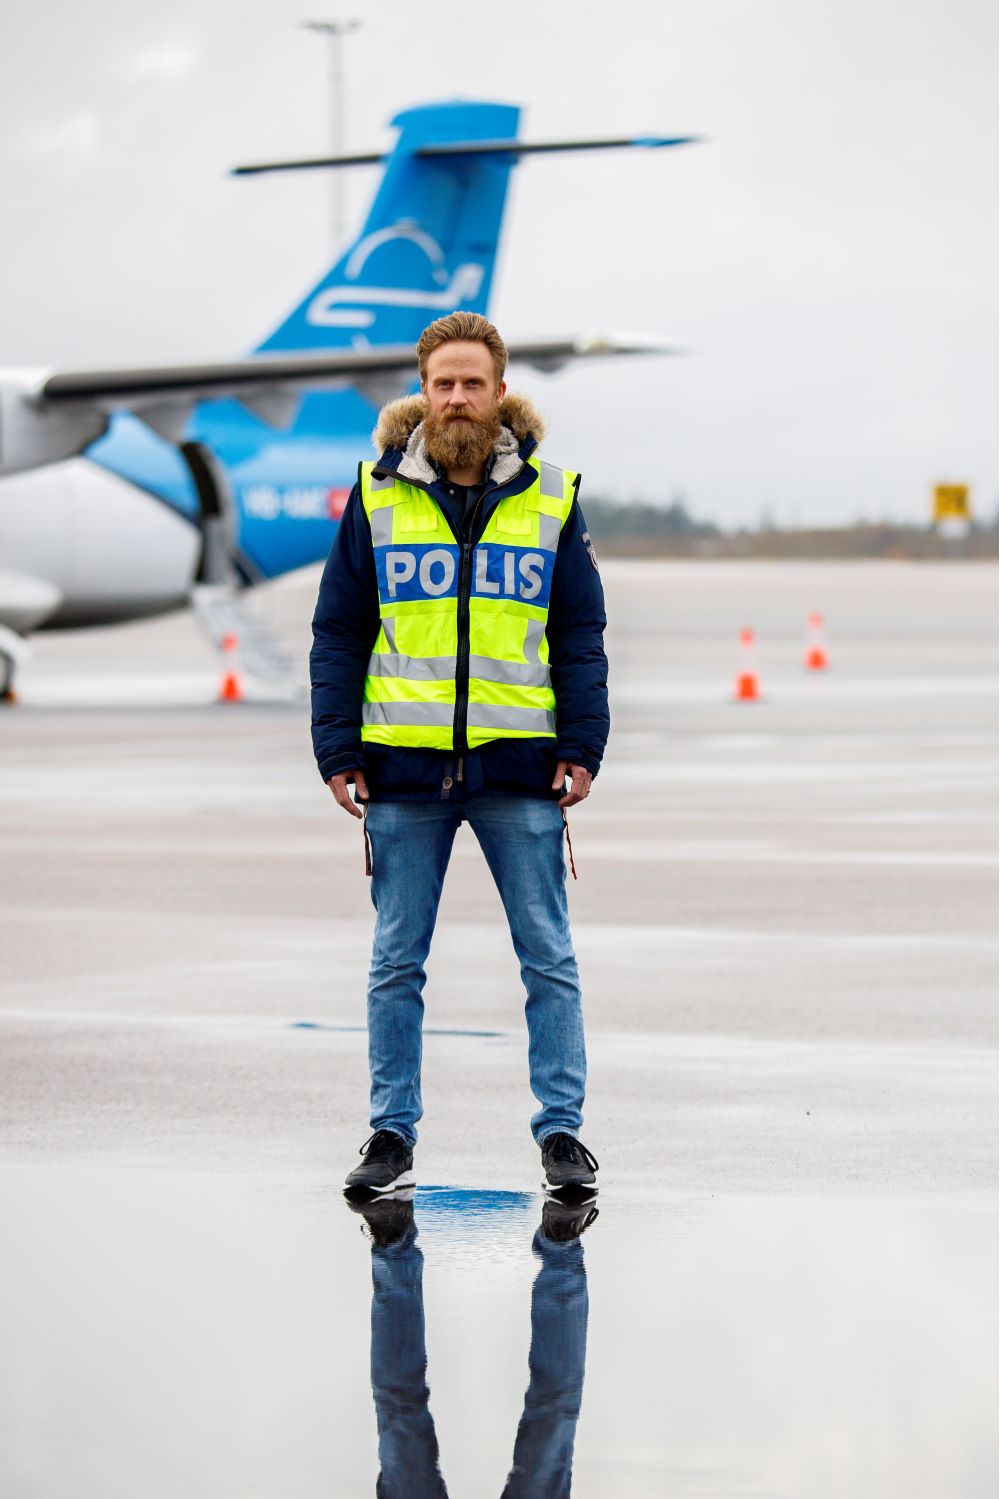 Verkställaren Andreas står iklädd gul  reflexväst som det står "polis" på ute på en landningsbana med ett flygplan i bakgrunden. Foto.